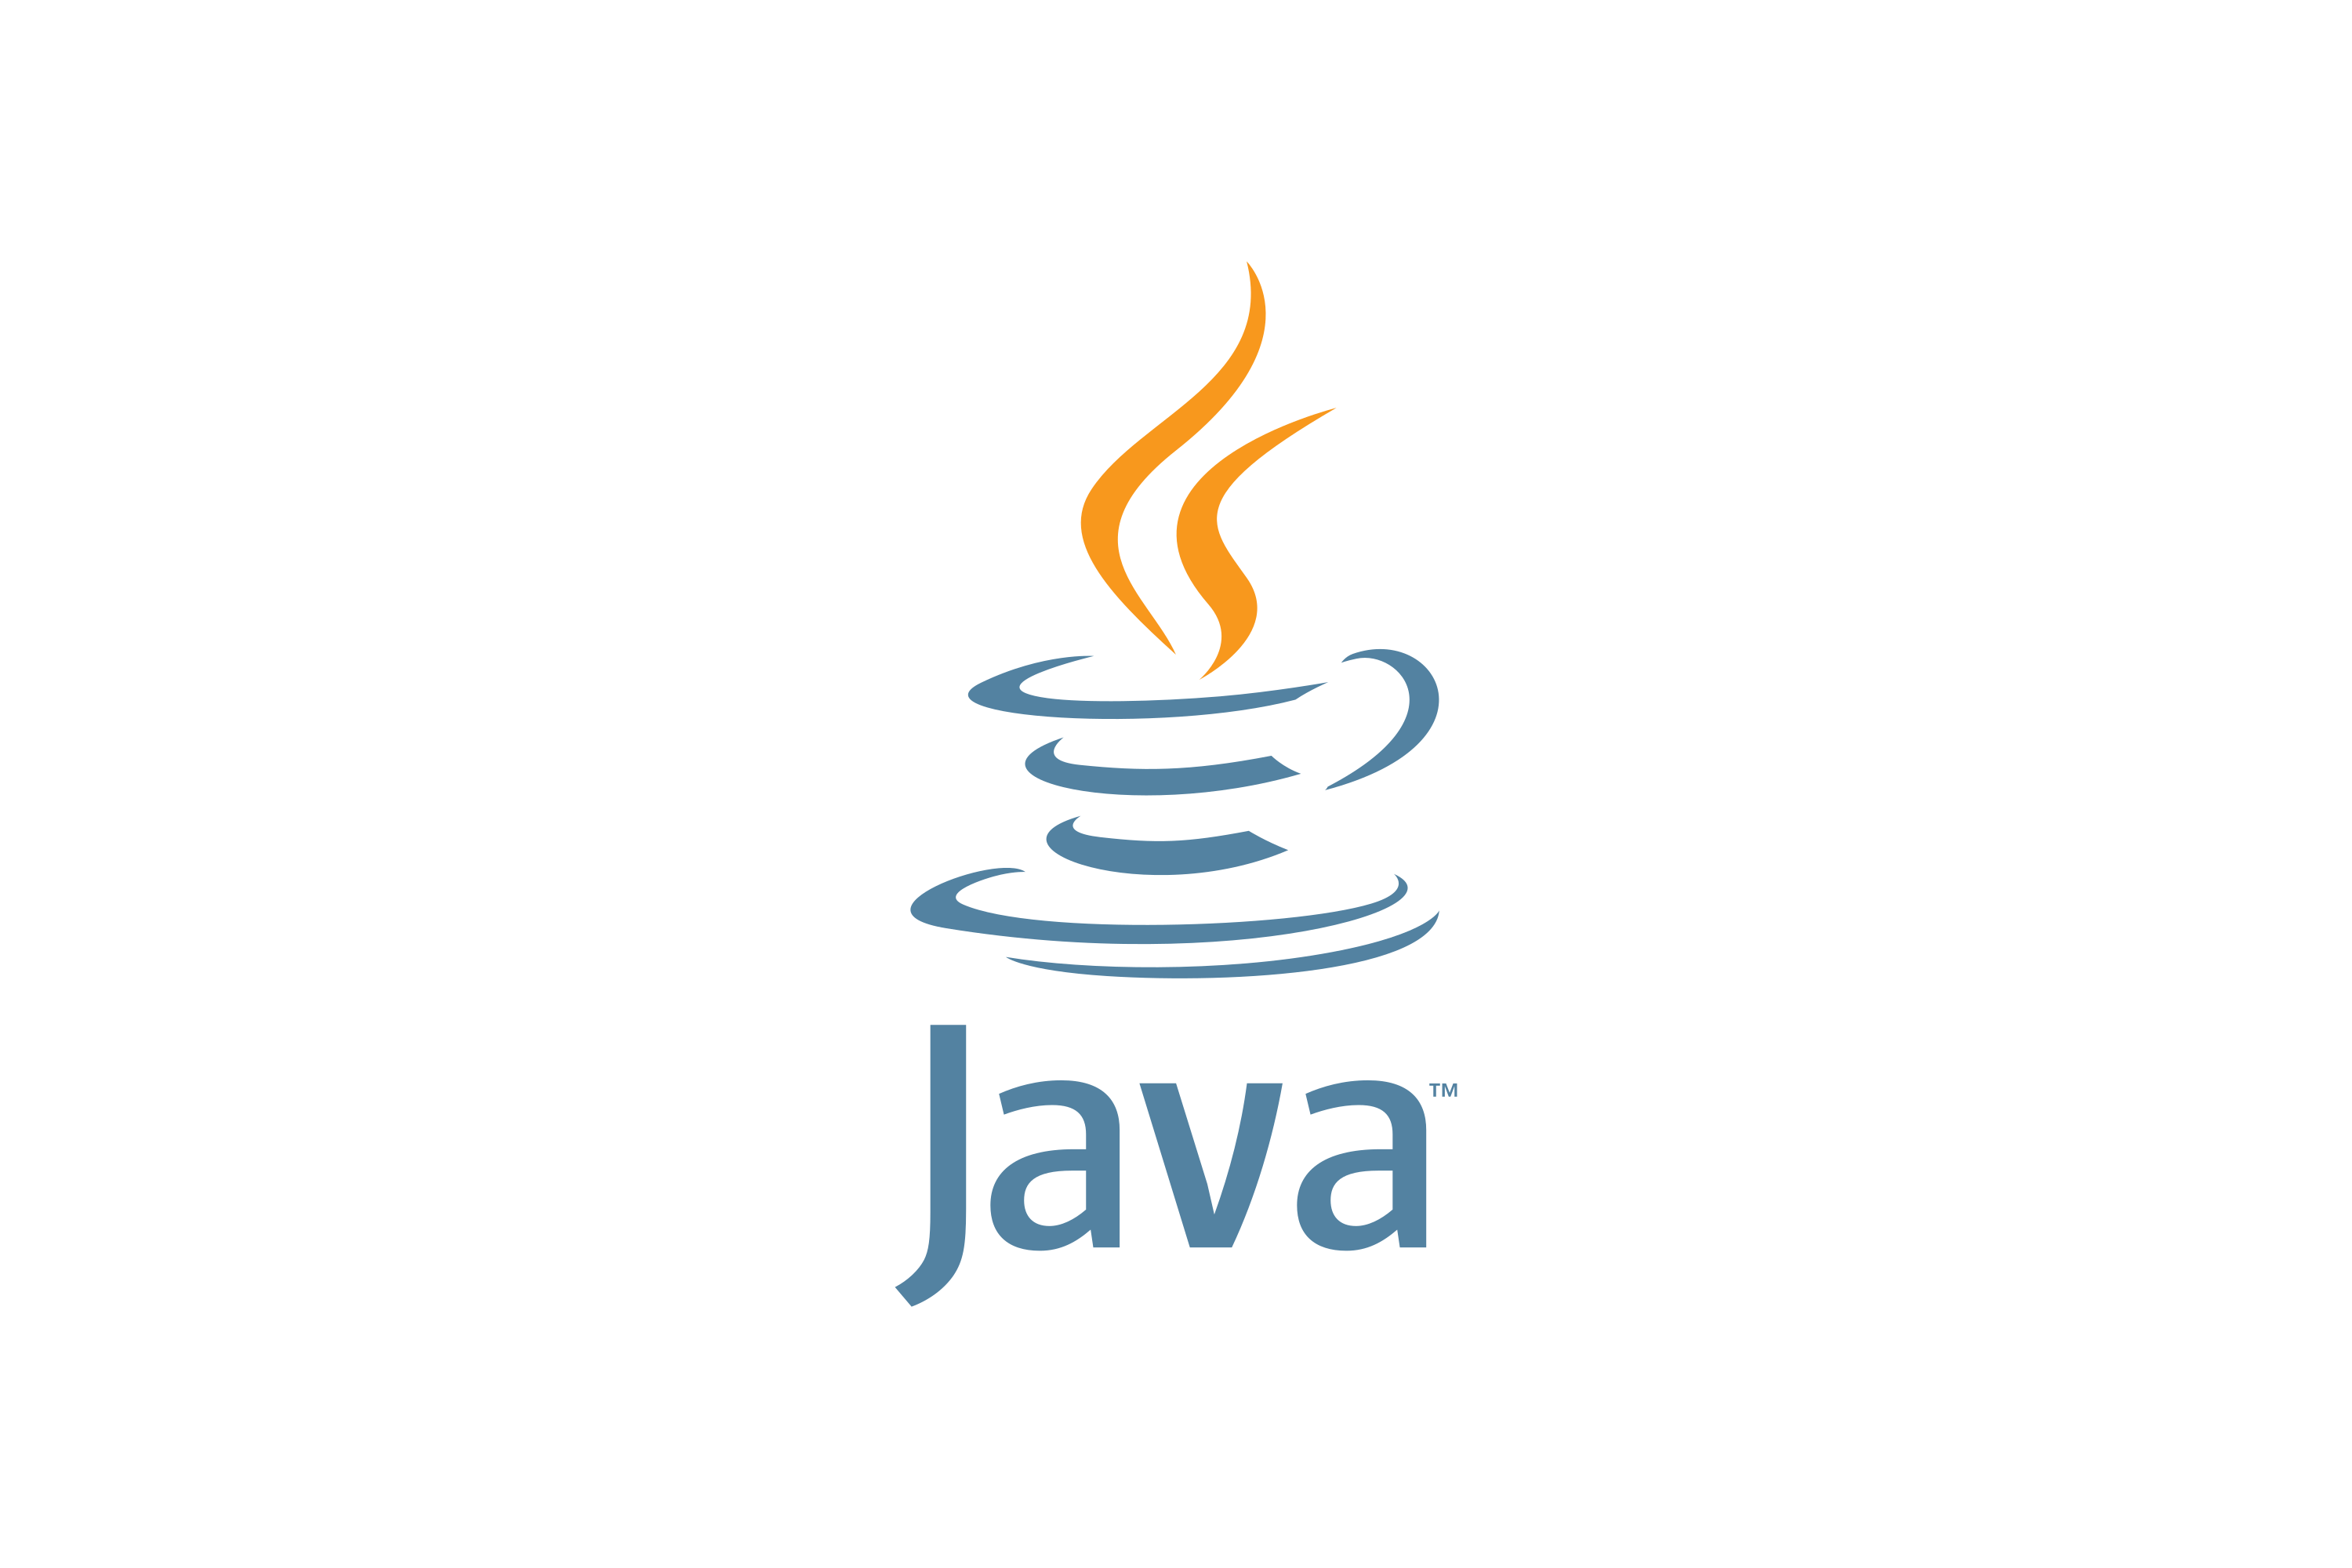 Jvaязык программирования логотип. Иконка java. Java логотип. Джава язык программирования логотип. Java под